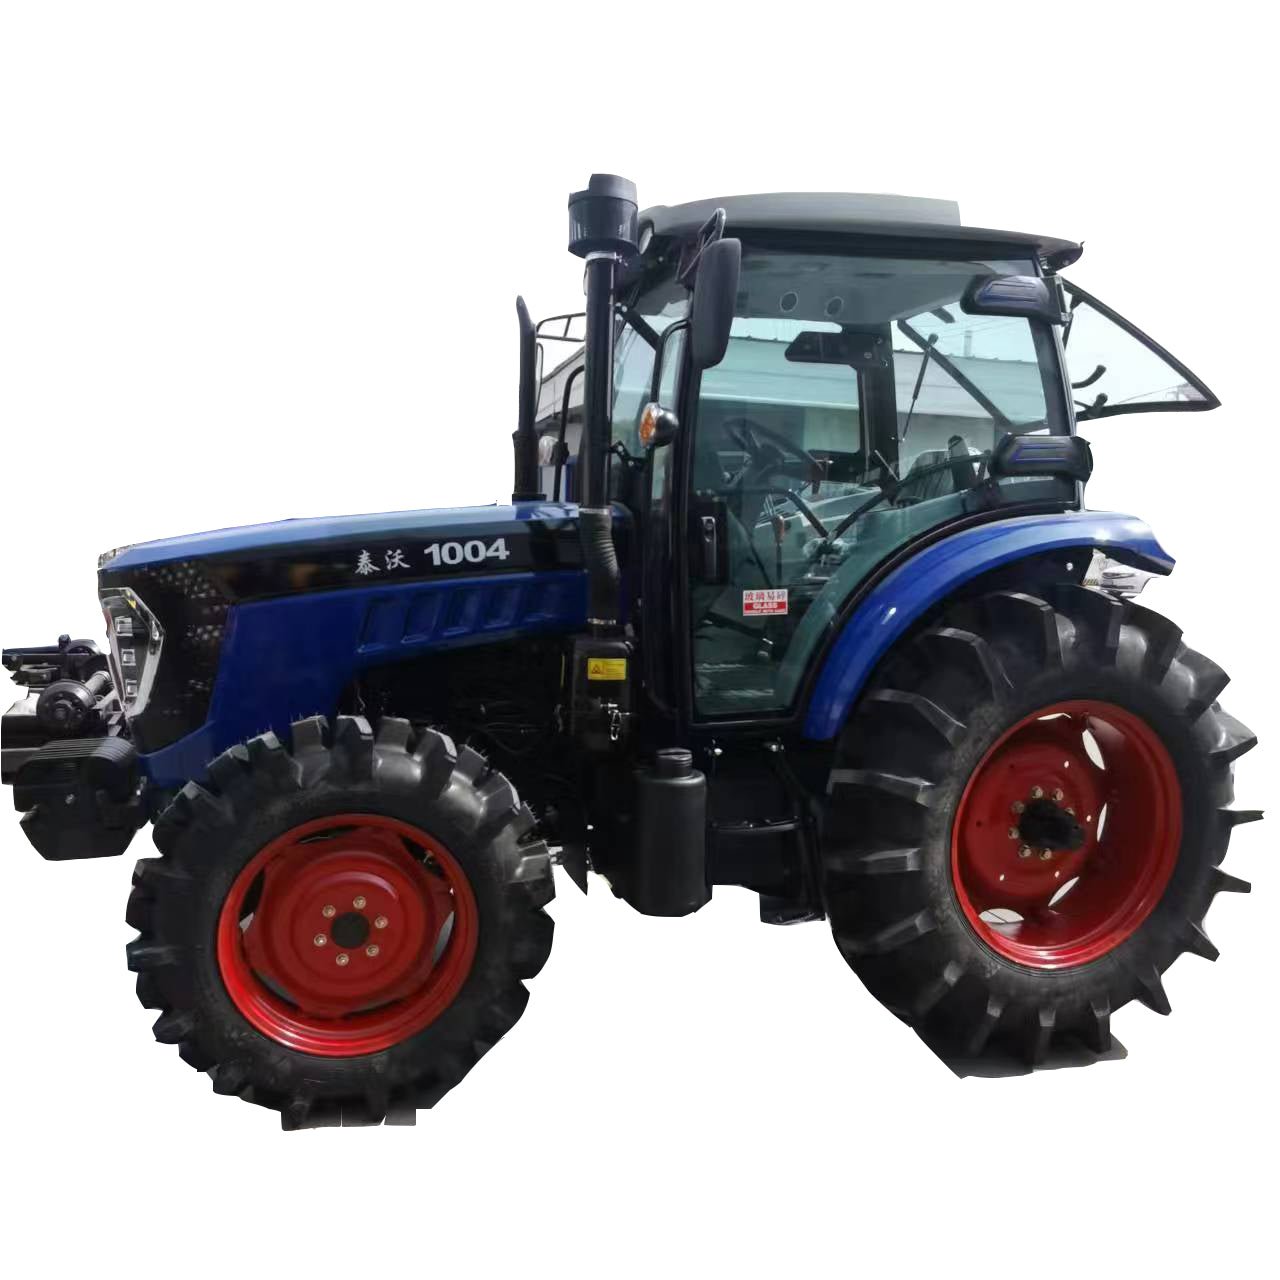 Farm tractor - CECLE Machine